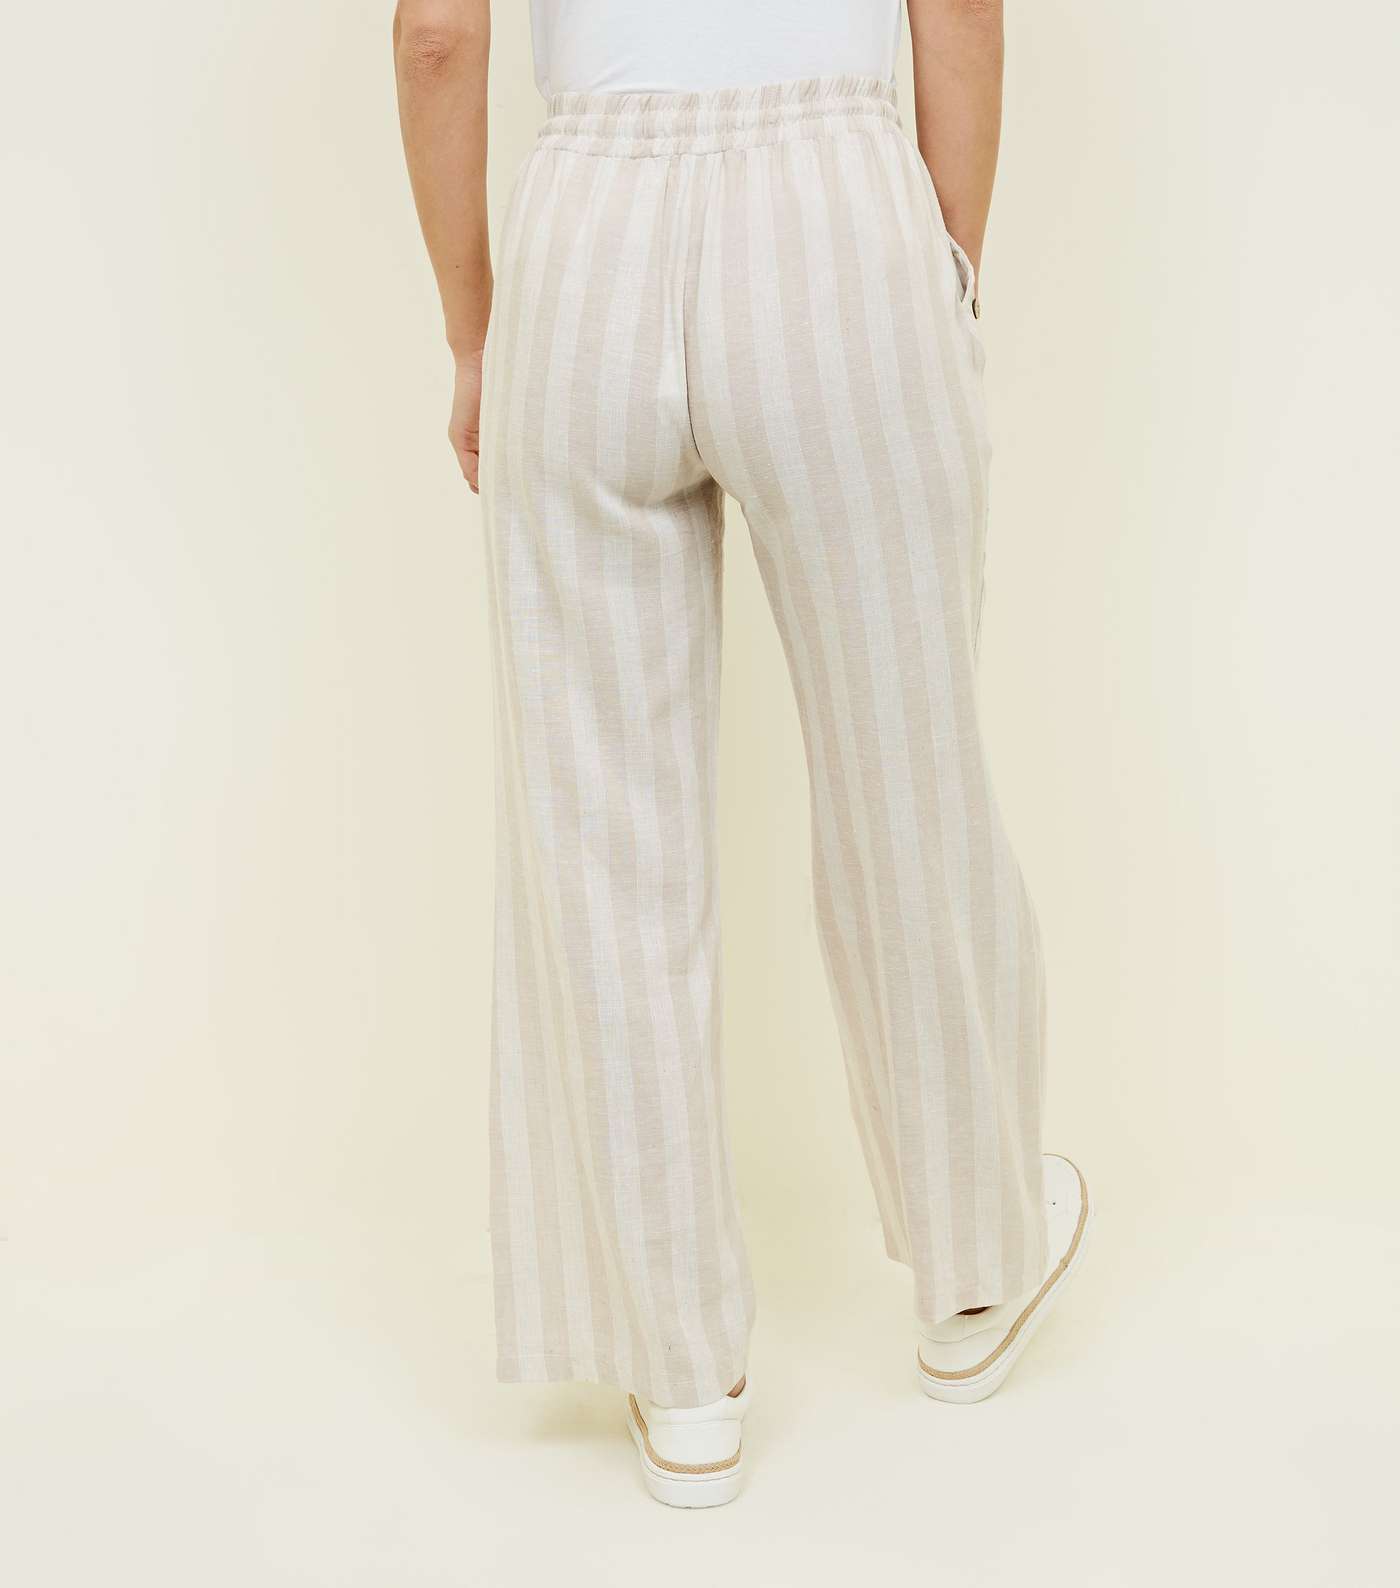 Lulua London Off White Stripe Linen-Look Trousers  Image 3